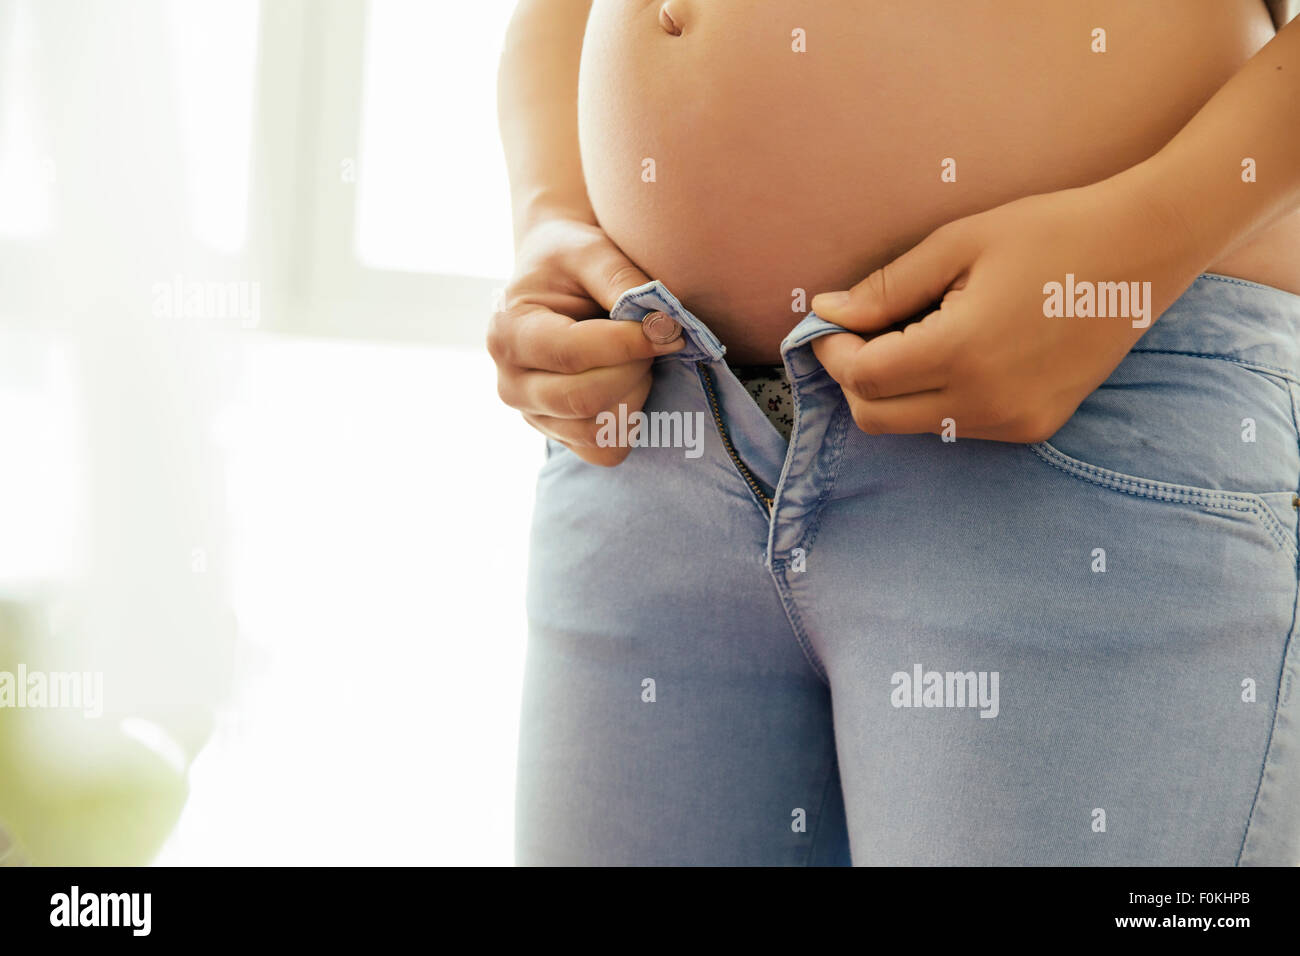 Femme enceinte bouton essaie de son jean, close-up Banque D'Images